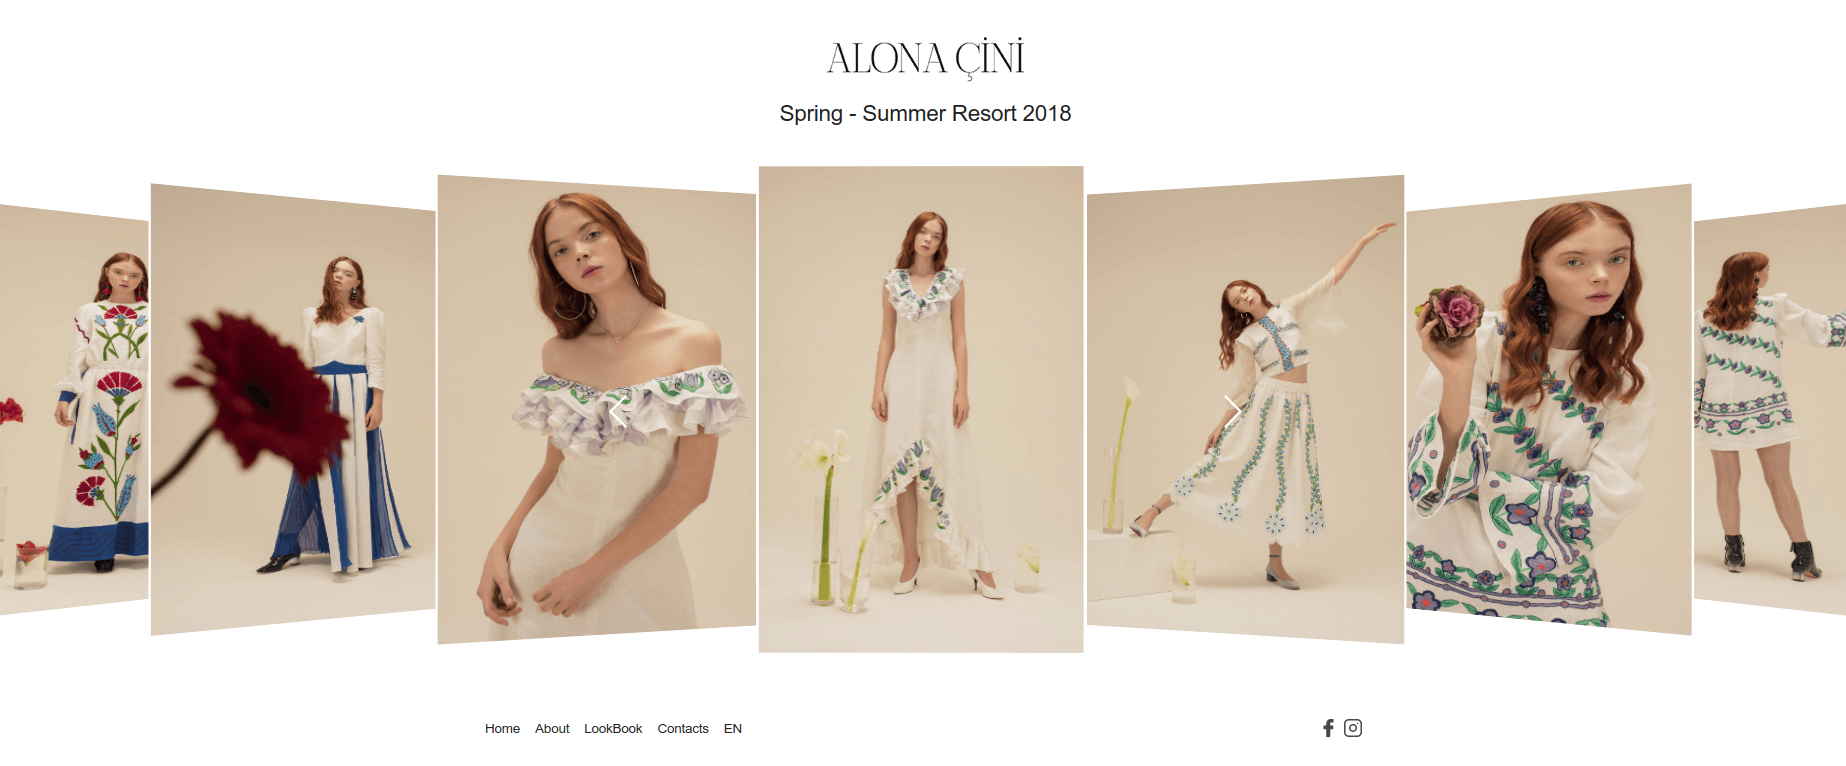 Интернет-магазин одежды Alona Cini